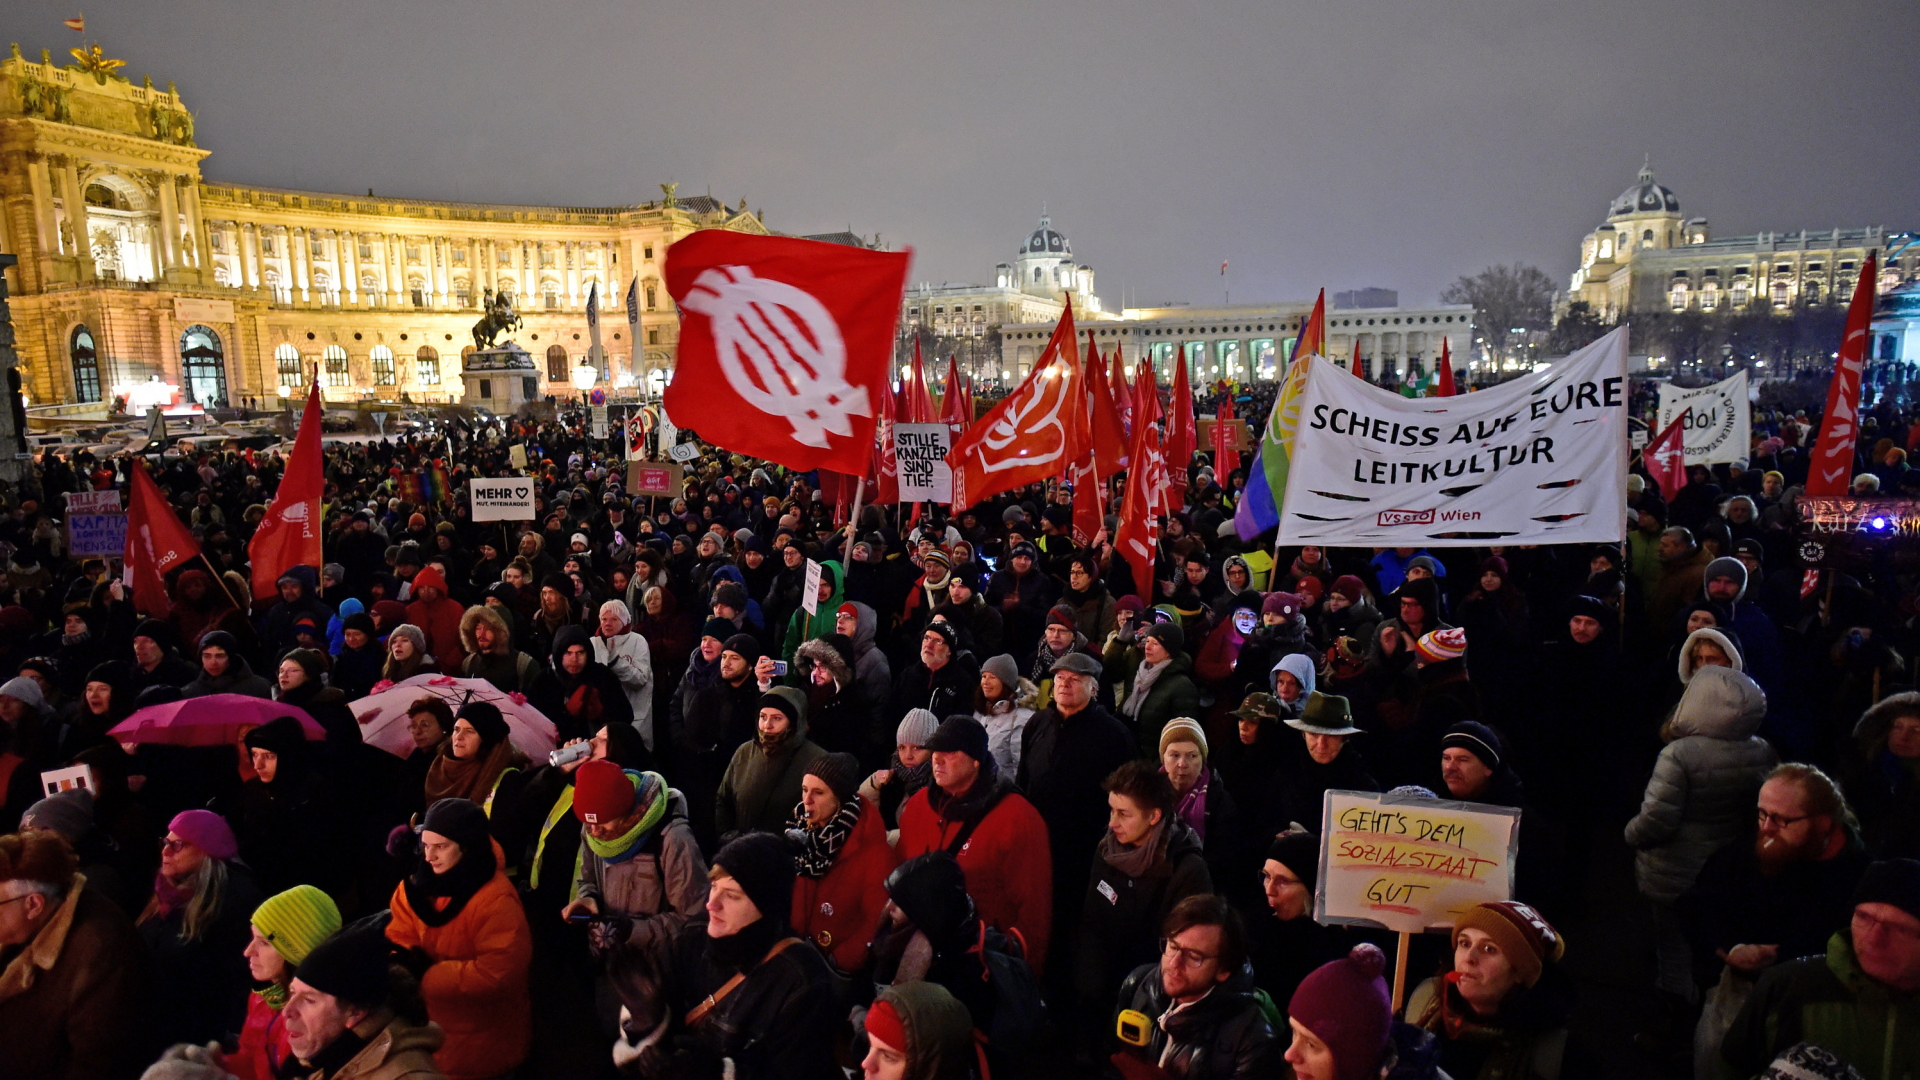 Rund 17.000 Menschen haben in Wien nach Angaben der Polizei gegen die Migrations- und Sozialpolitik der rechtskonservativen Regierung demonstriert. | Bildquelle: dpa